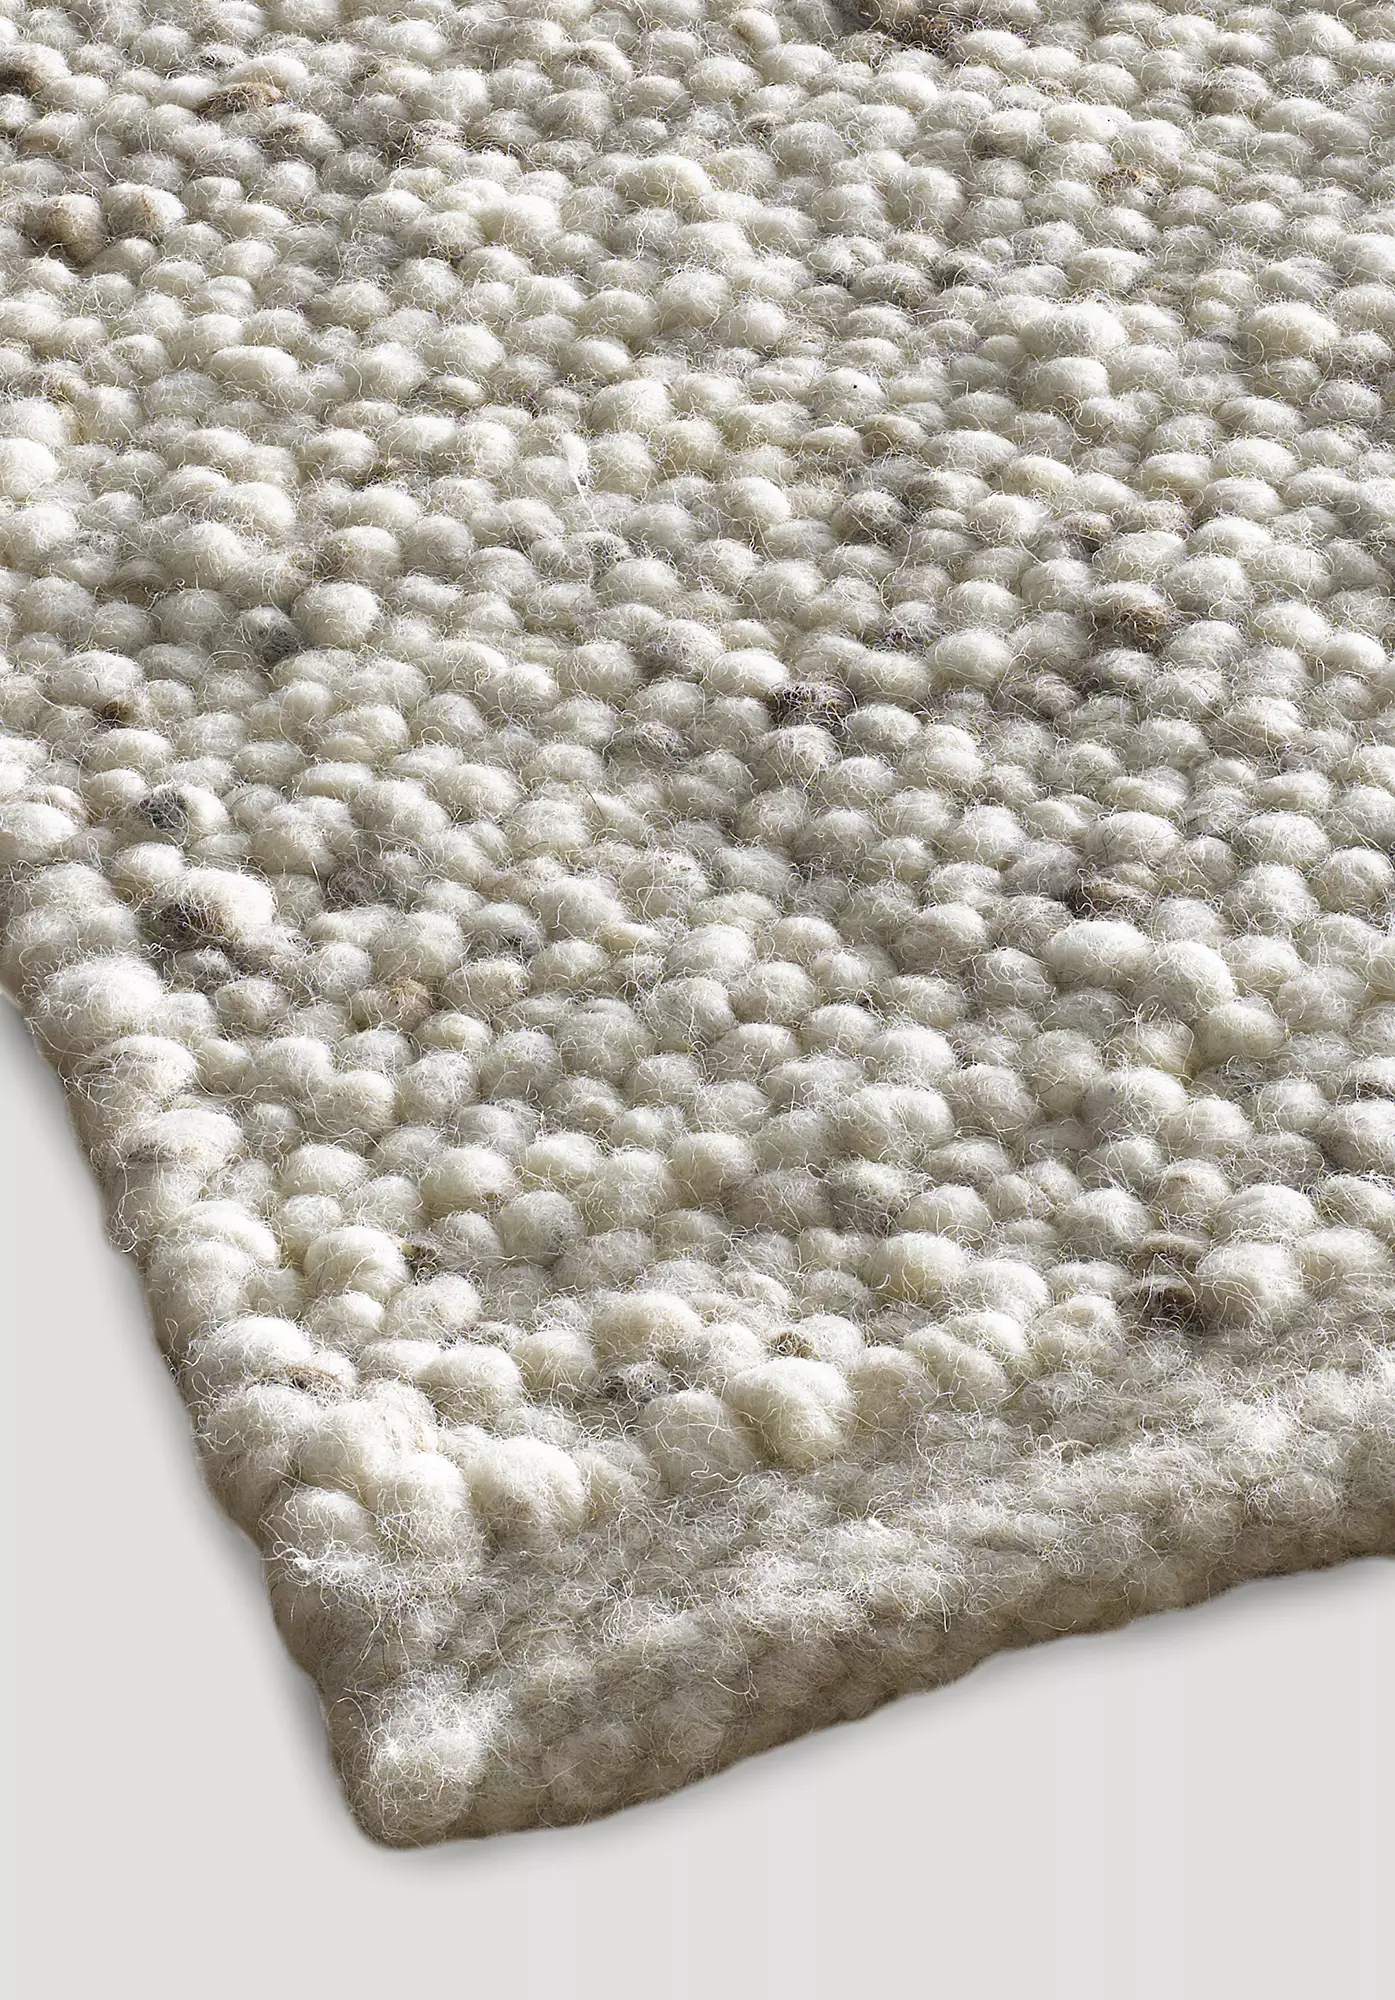 Rhönschaf woven carpet made from regional virgin wool - 1